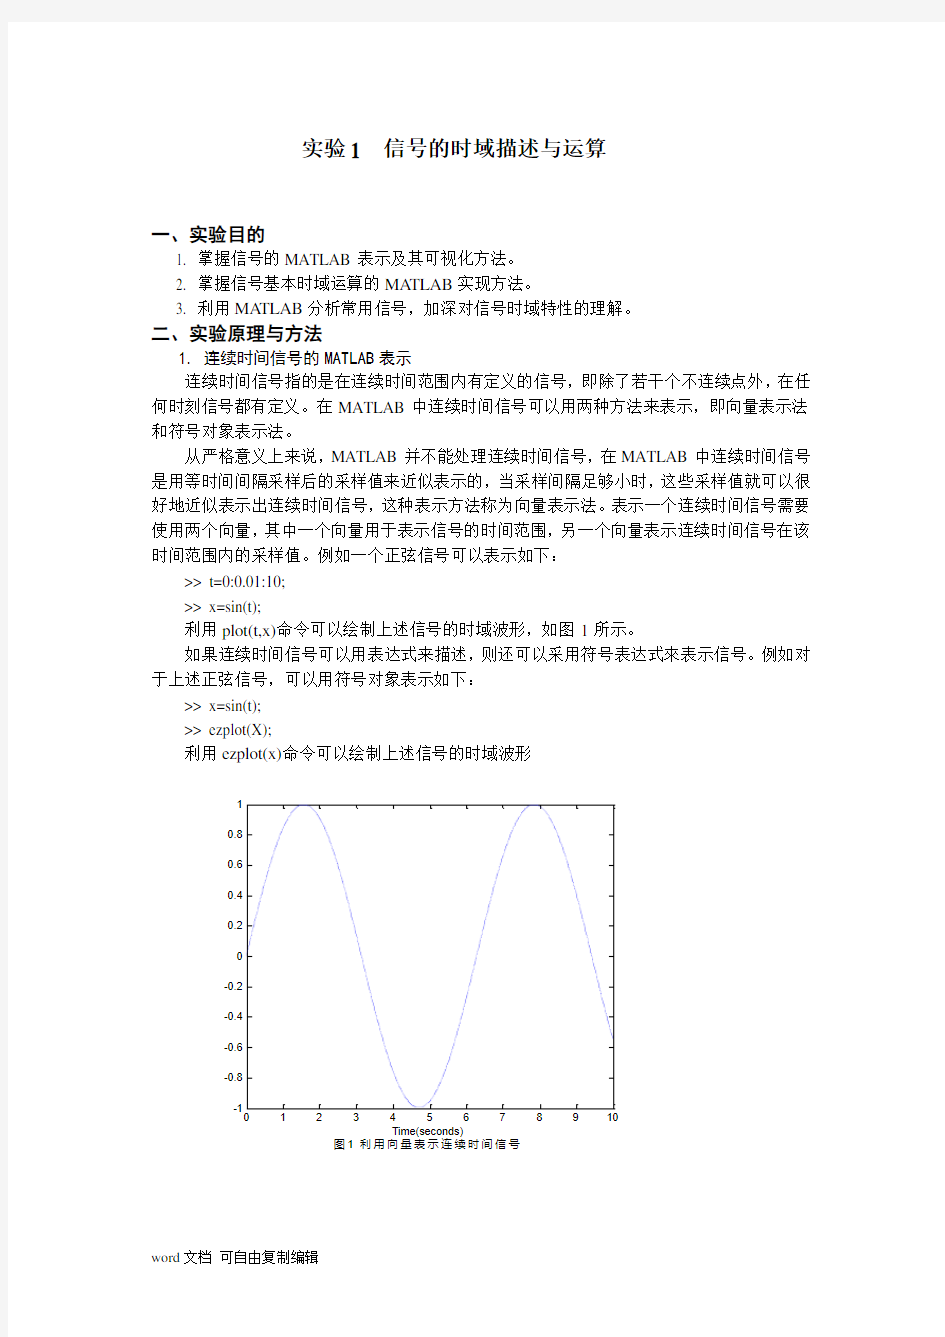 北京理工大学信号与系统实验实验报告